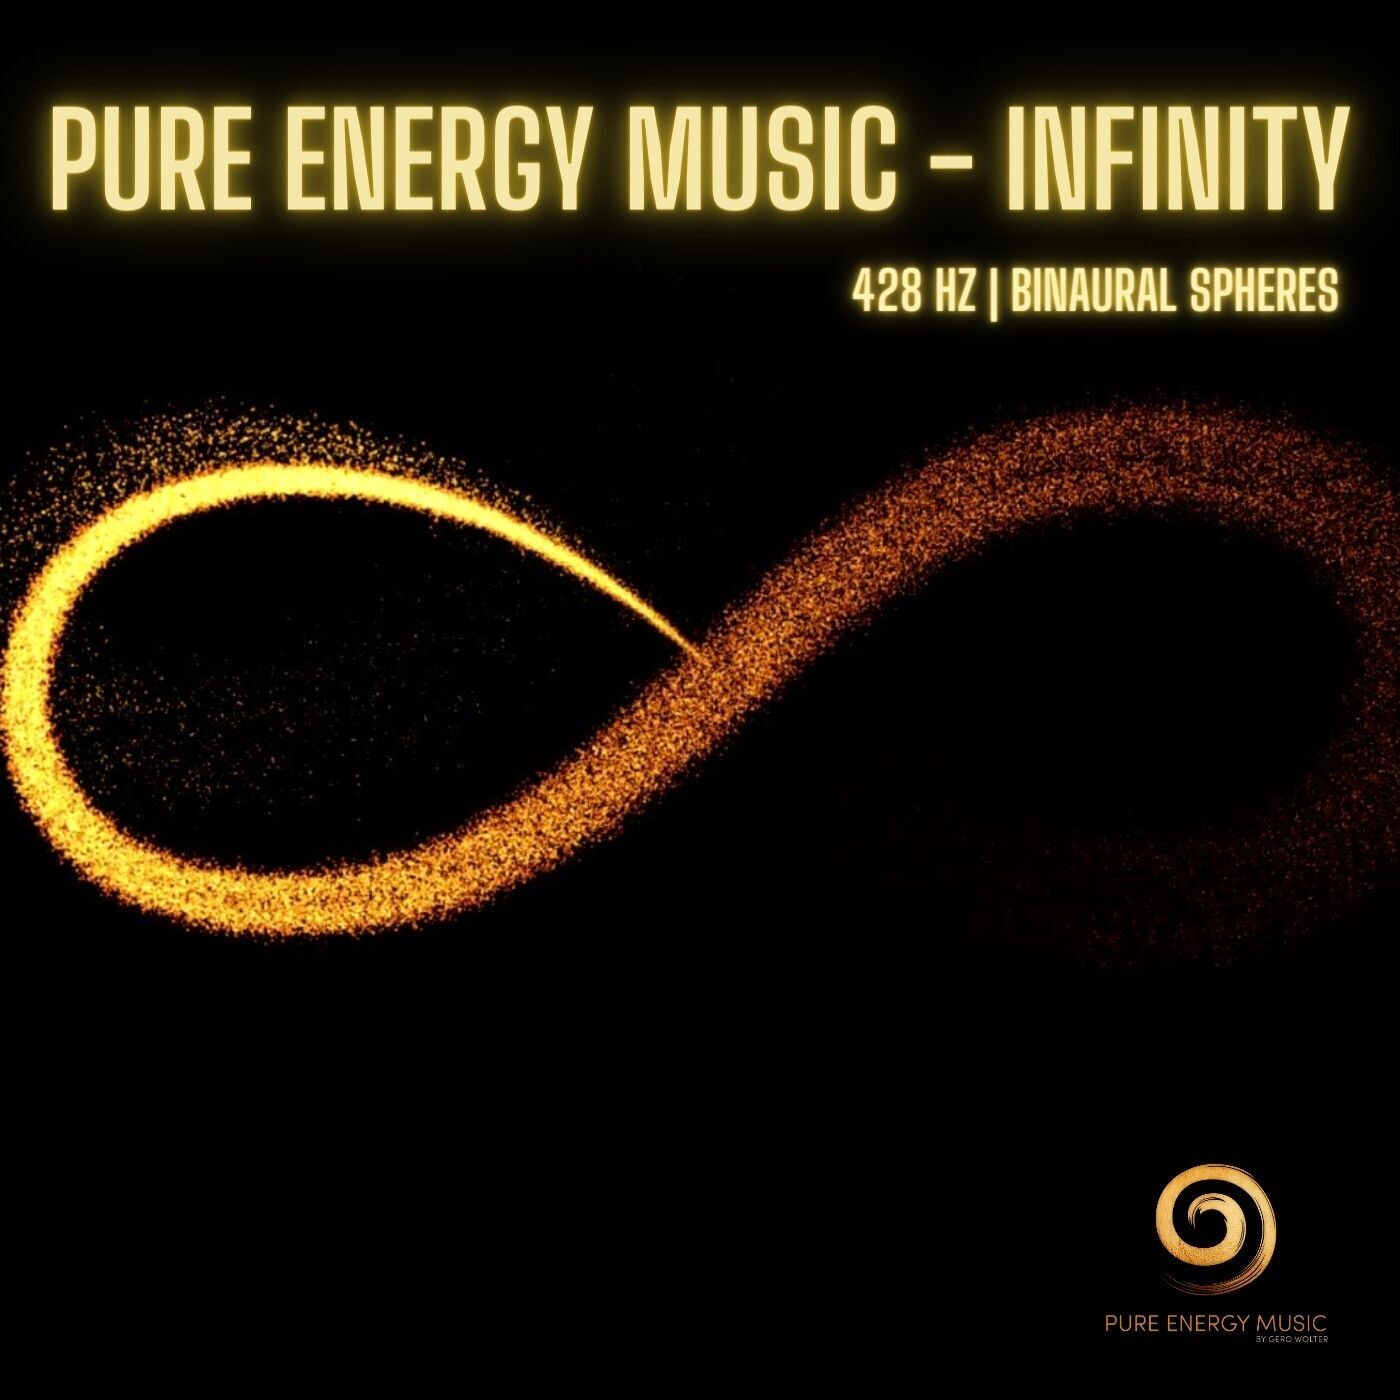 EP „Infinity“ MP3 | nach dem Kauf senden wir dir innerhalb 24 Stunden deinen persönlichen Download Link zu.